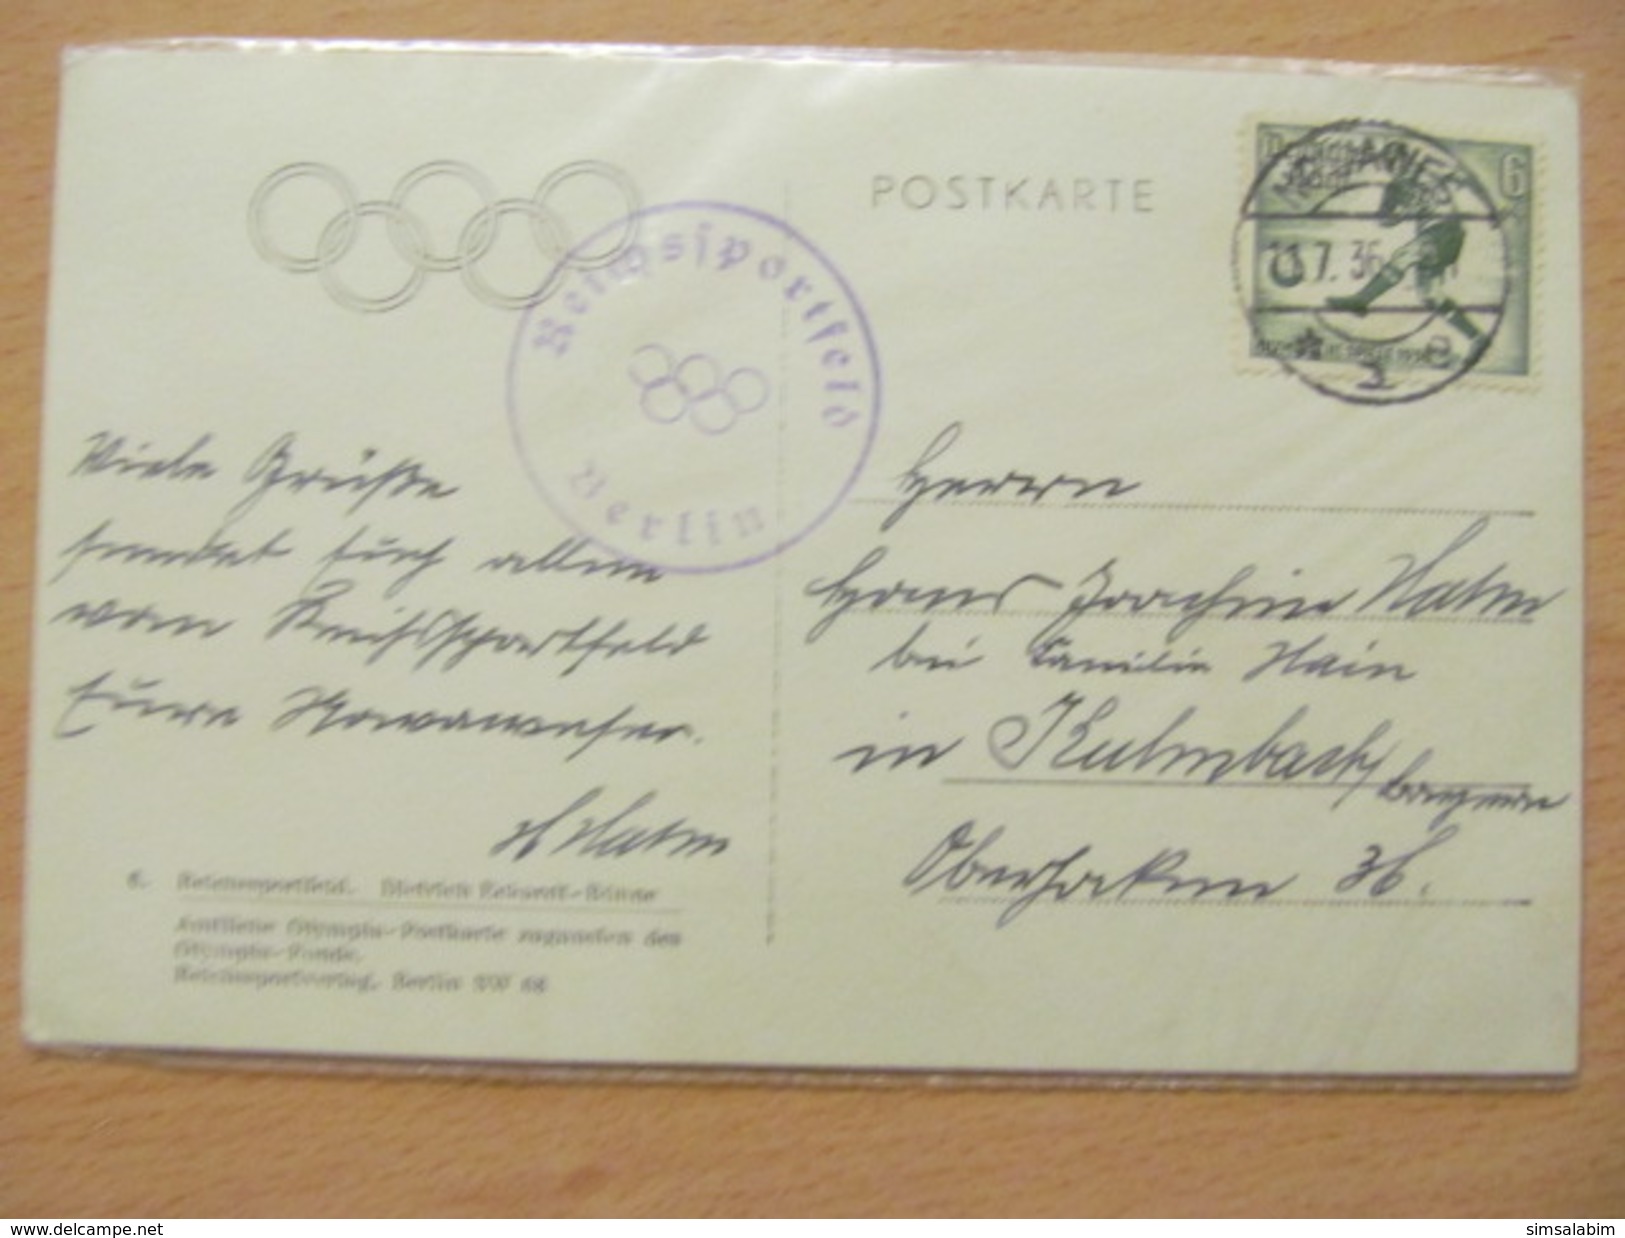 Olympiade 1936,tolle Sammlung von 21 verschiedenen SST Karten mit seltenen Stempeln!